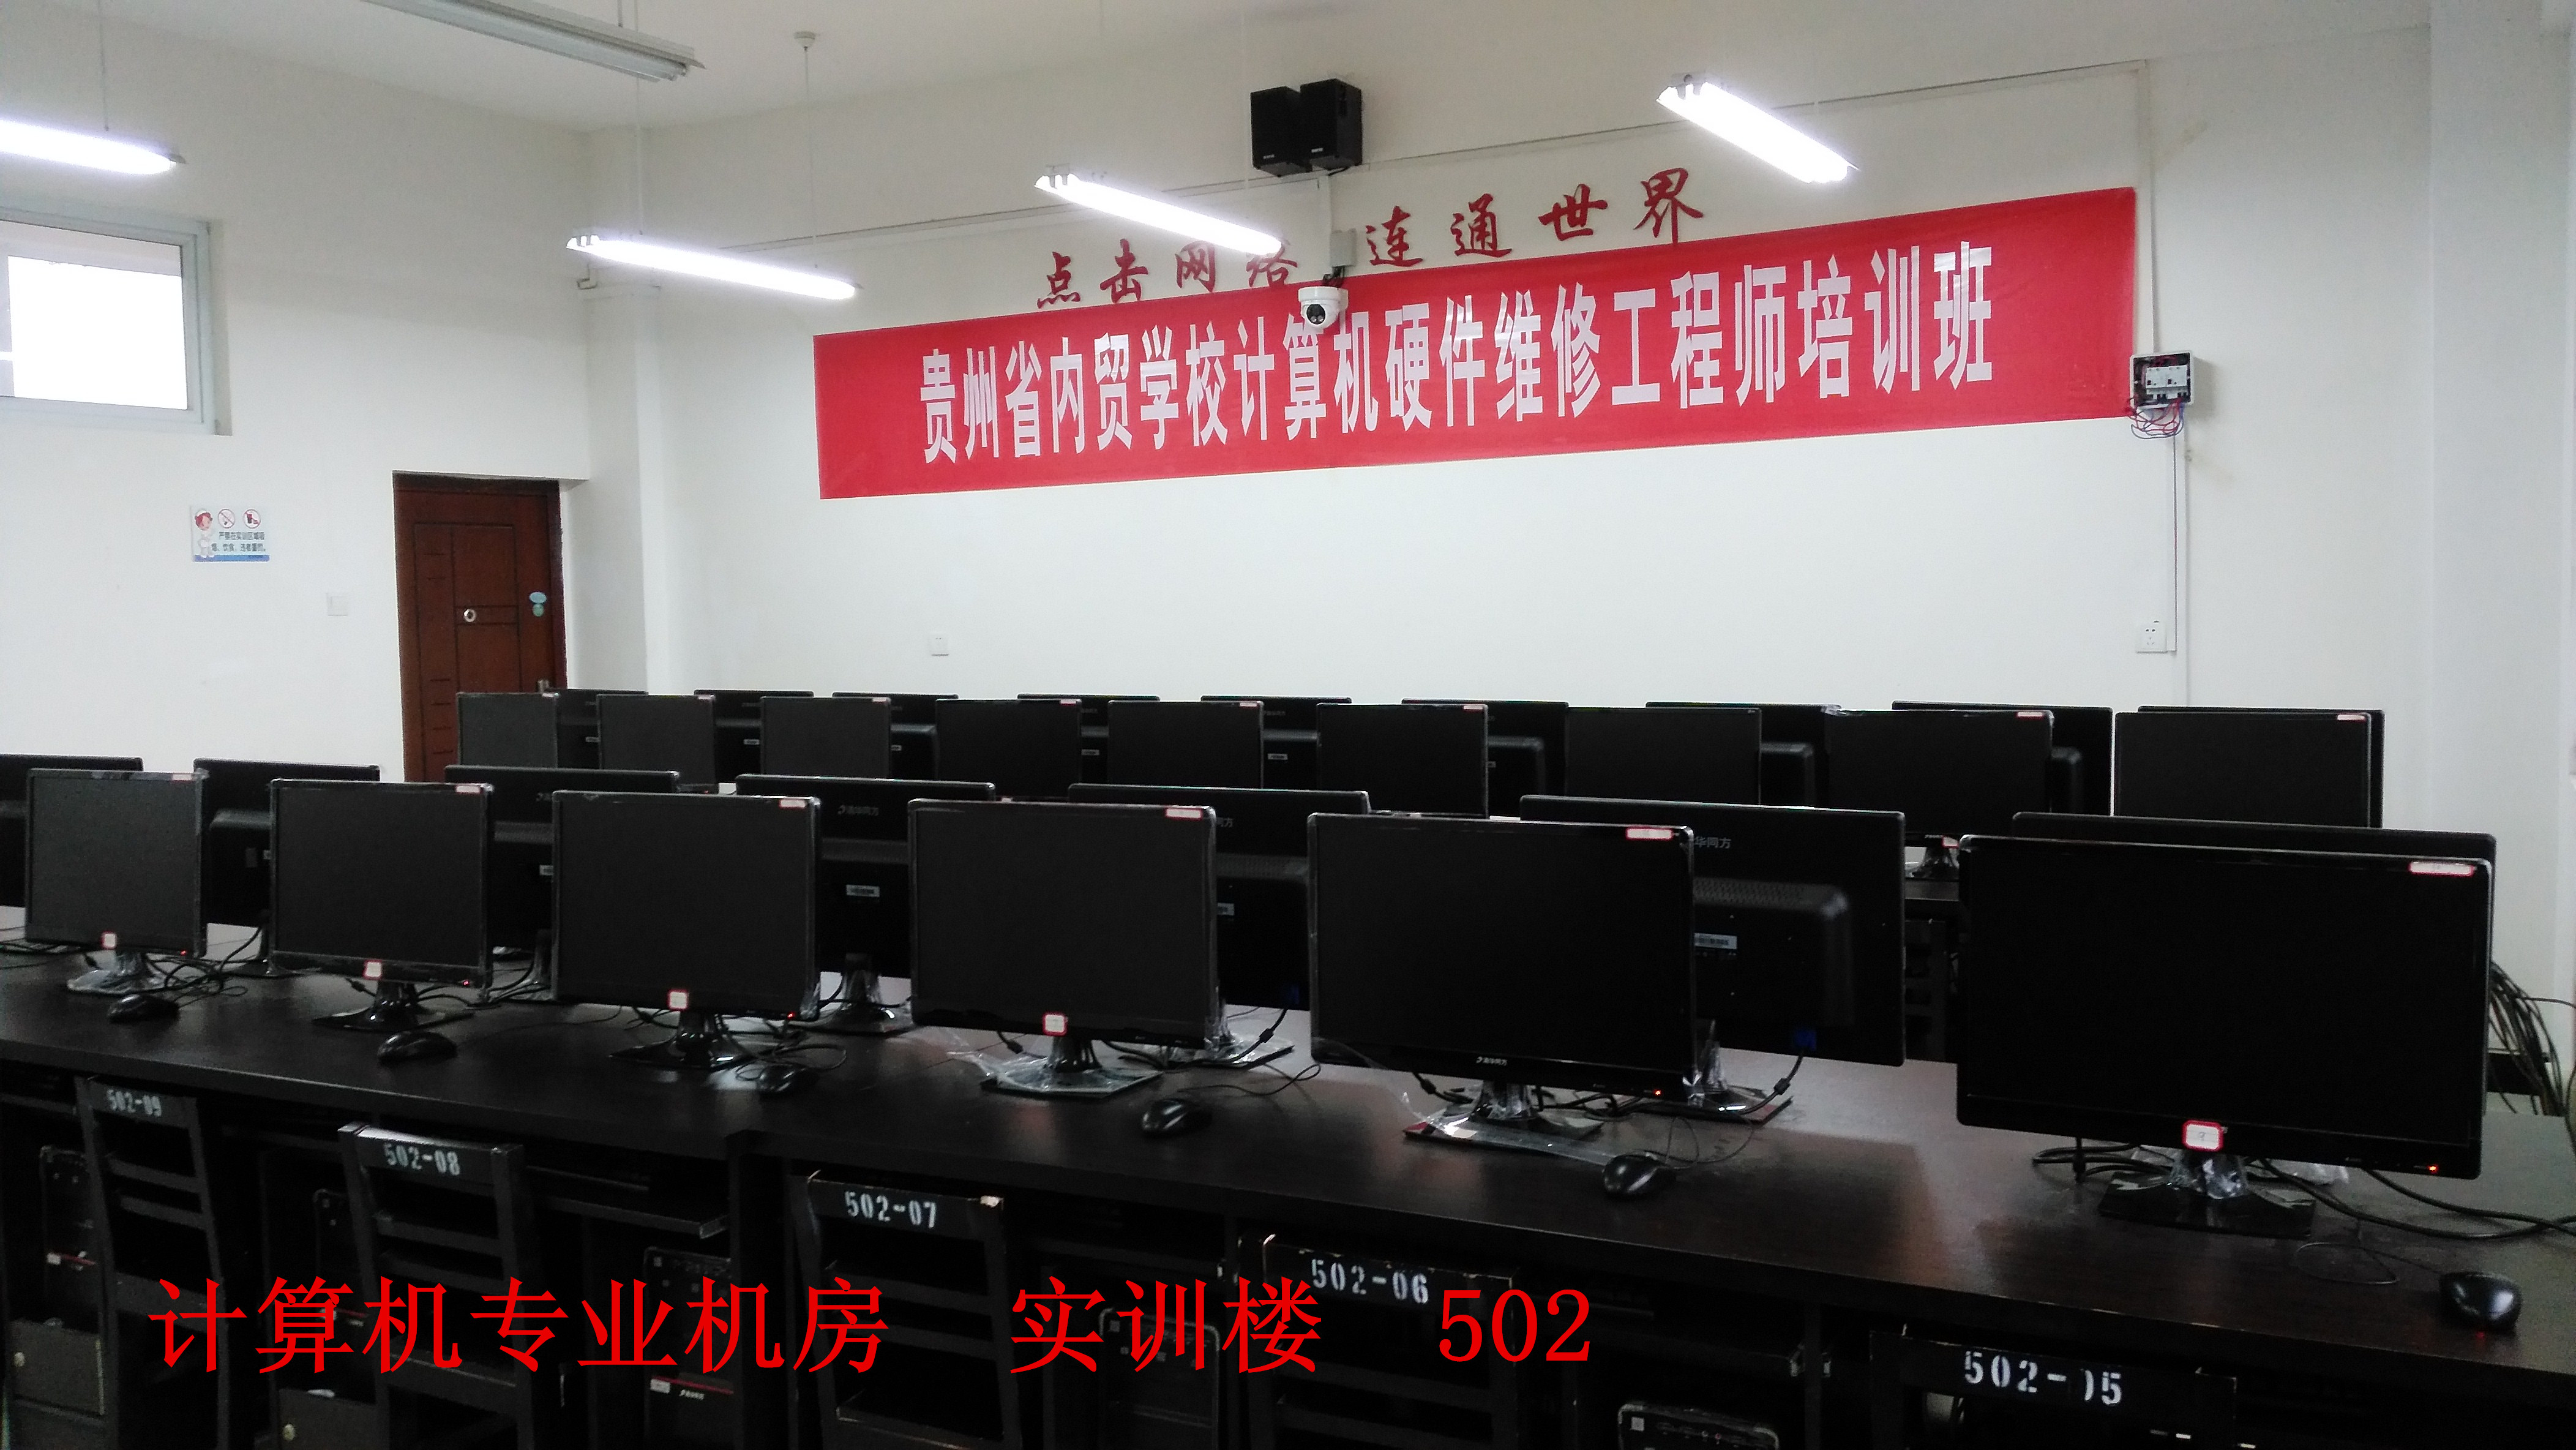 贵州经贸职业技术学院(南校区)计算机专业机房简介